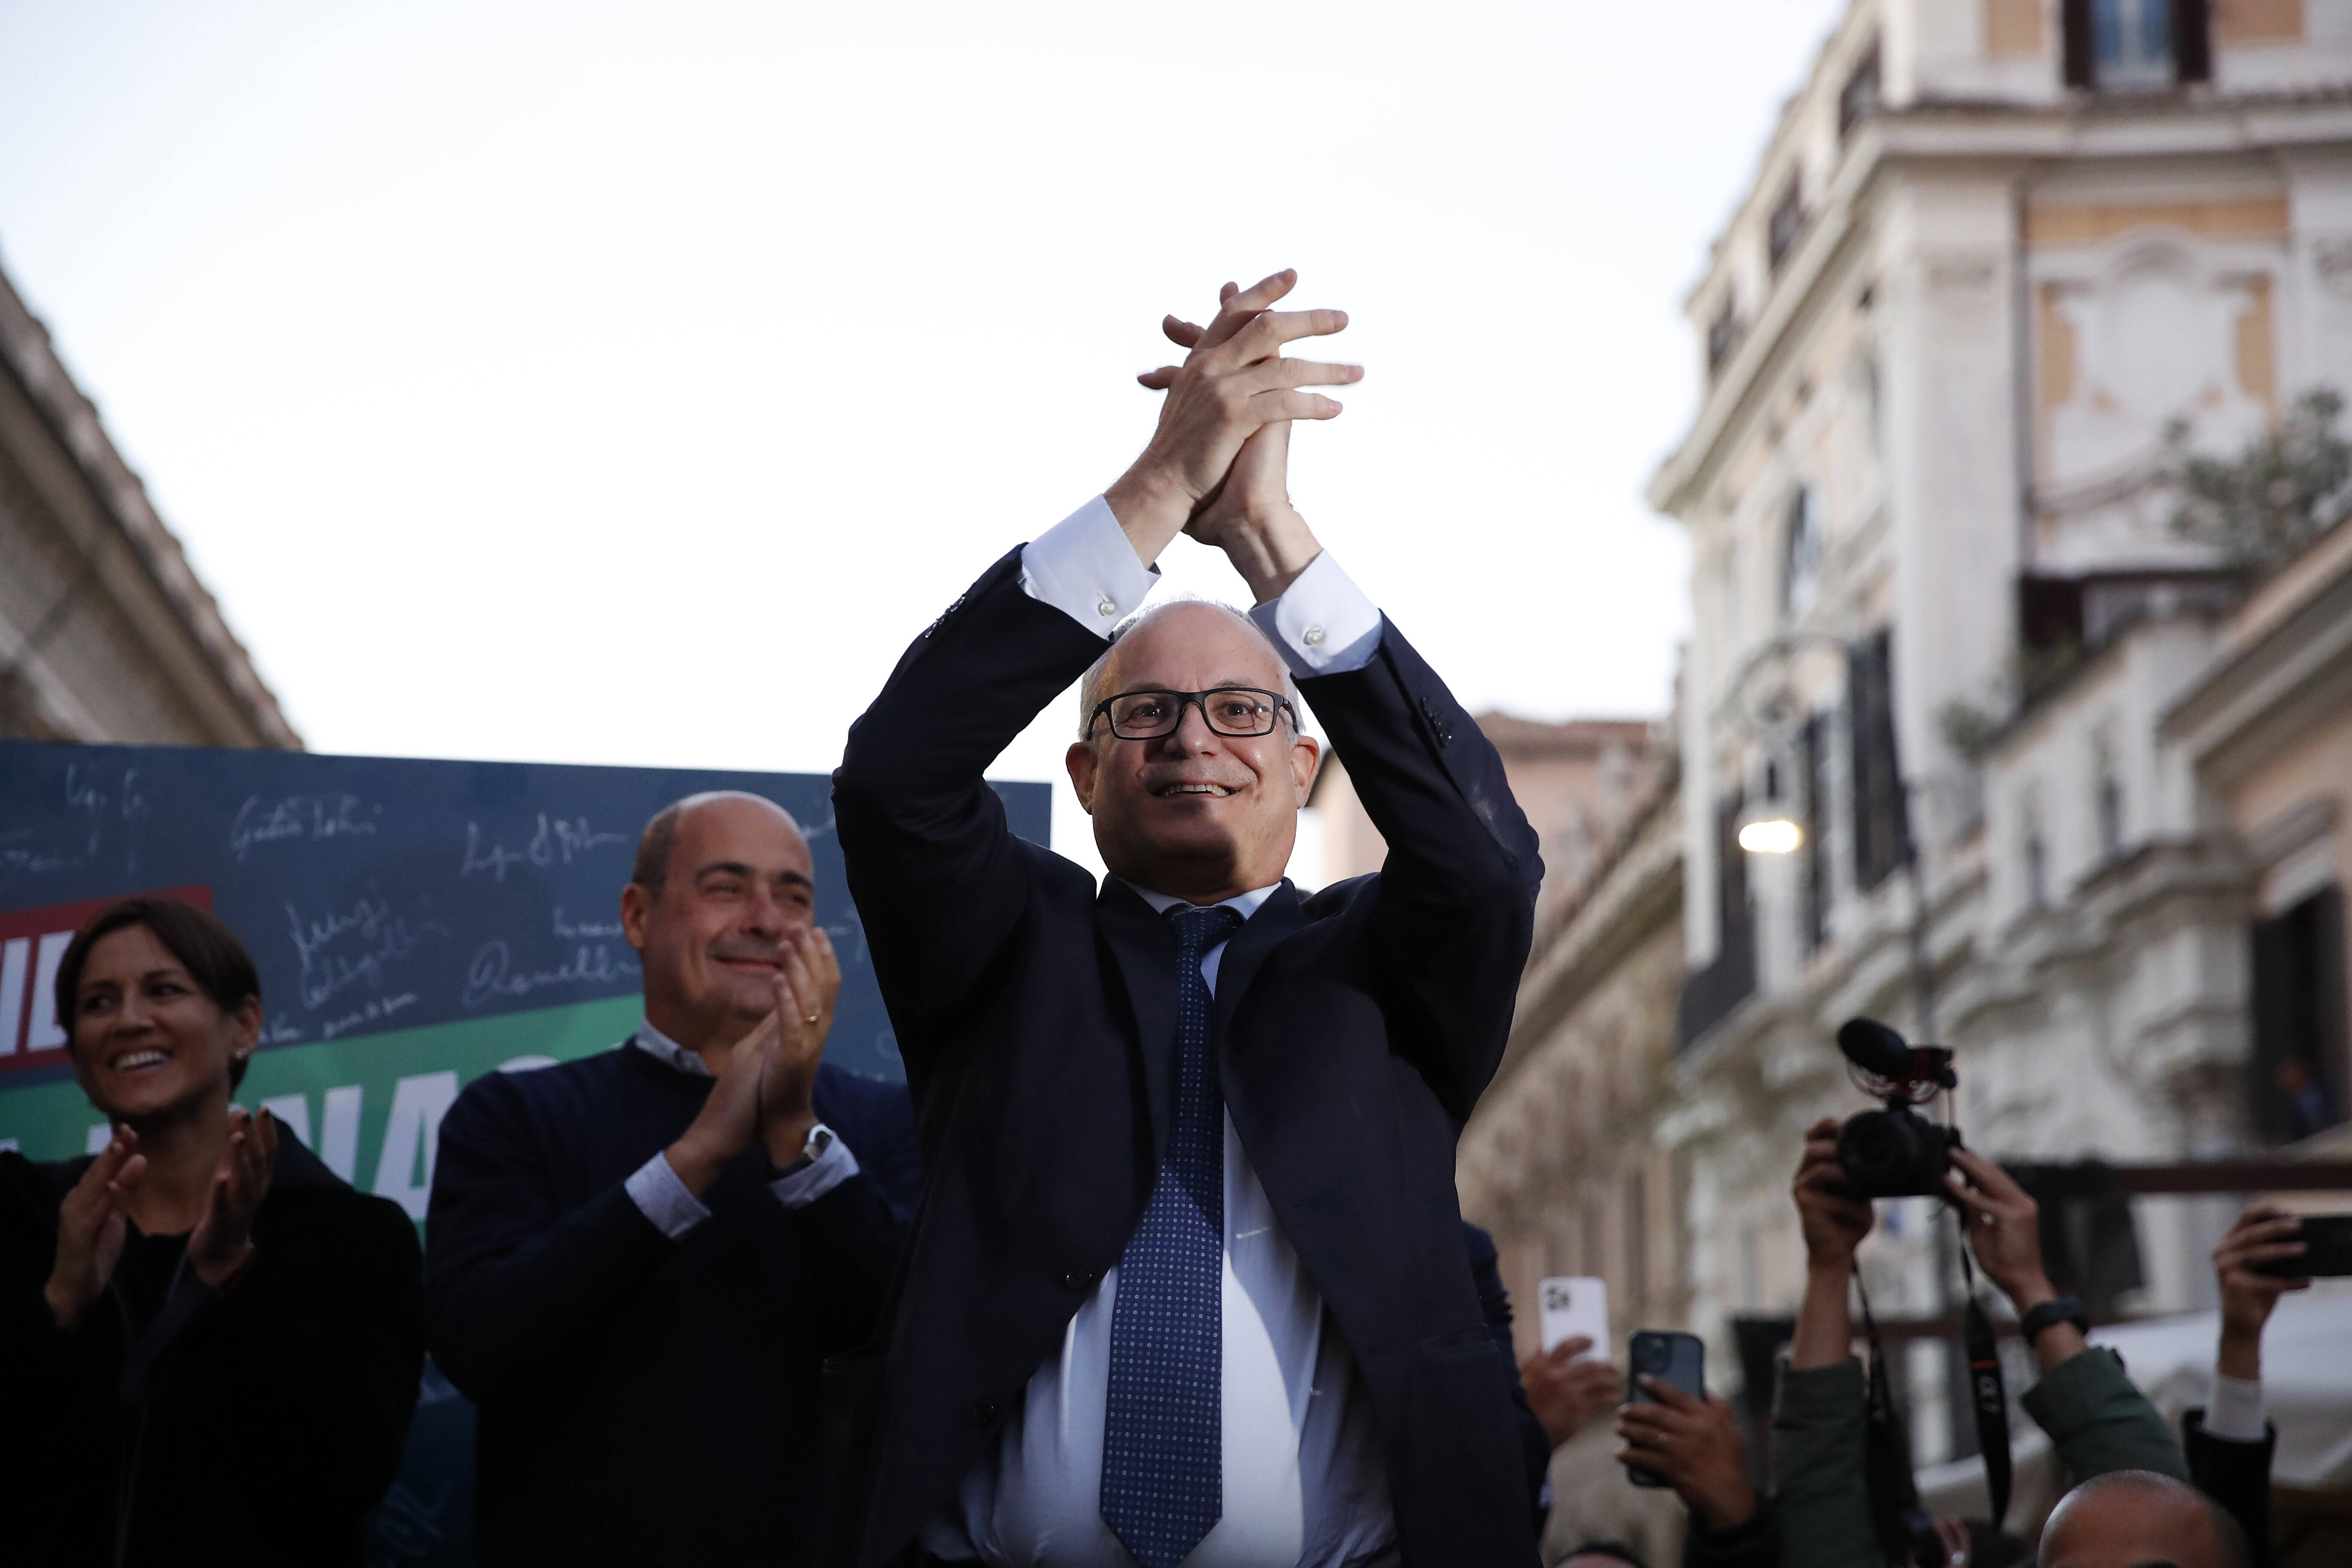 Wahlsieger in Rom: Roberto Gualtieri (Partito Democratico) ist neuer Bürgermeister der italienischen Hauptstadt.